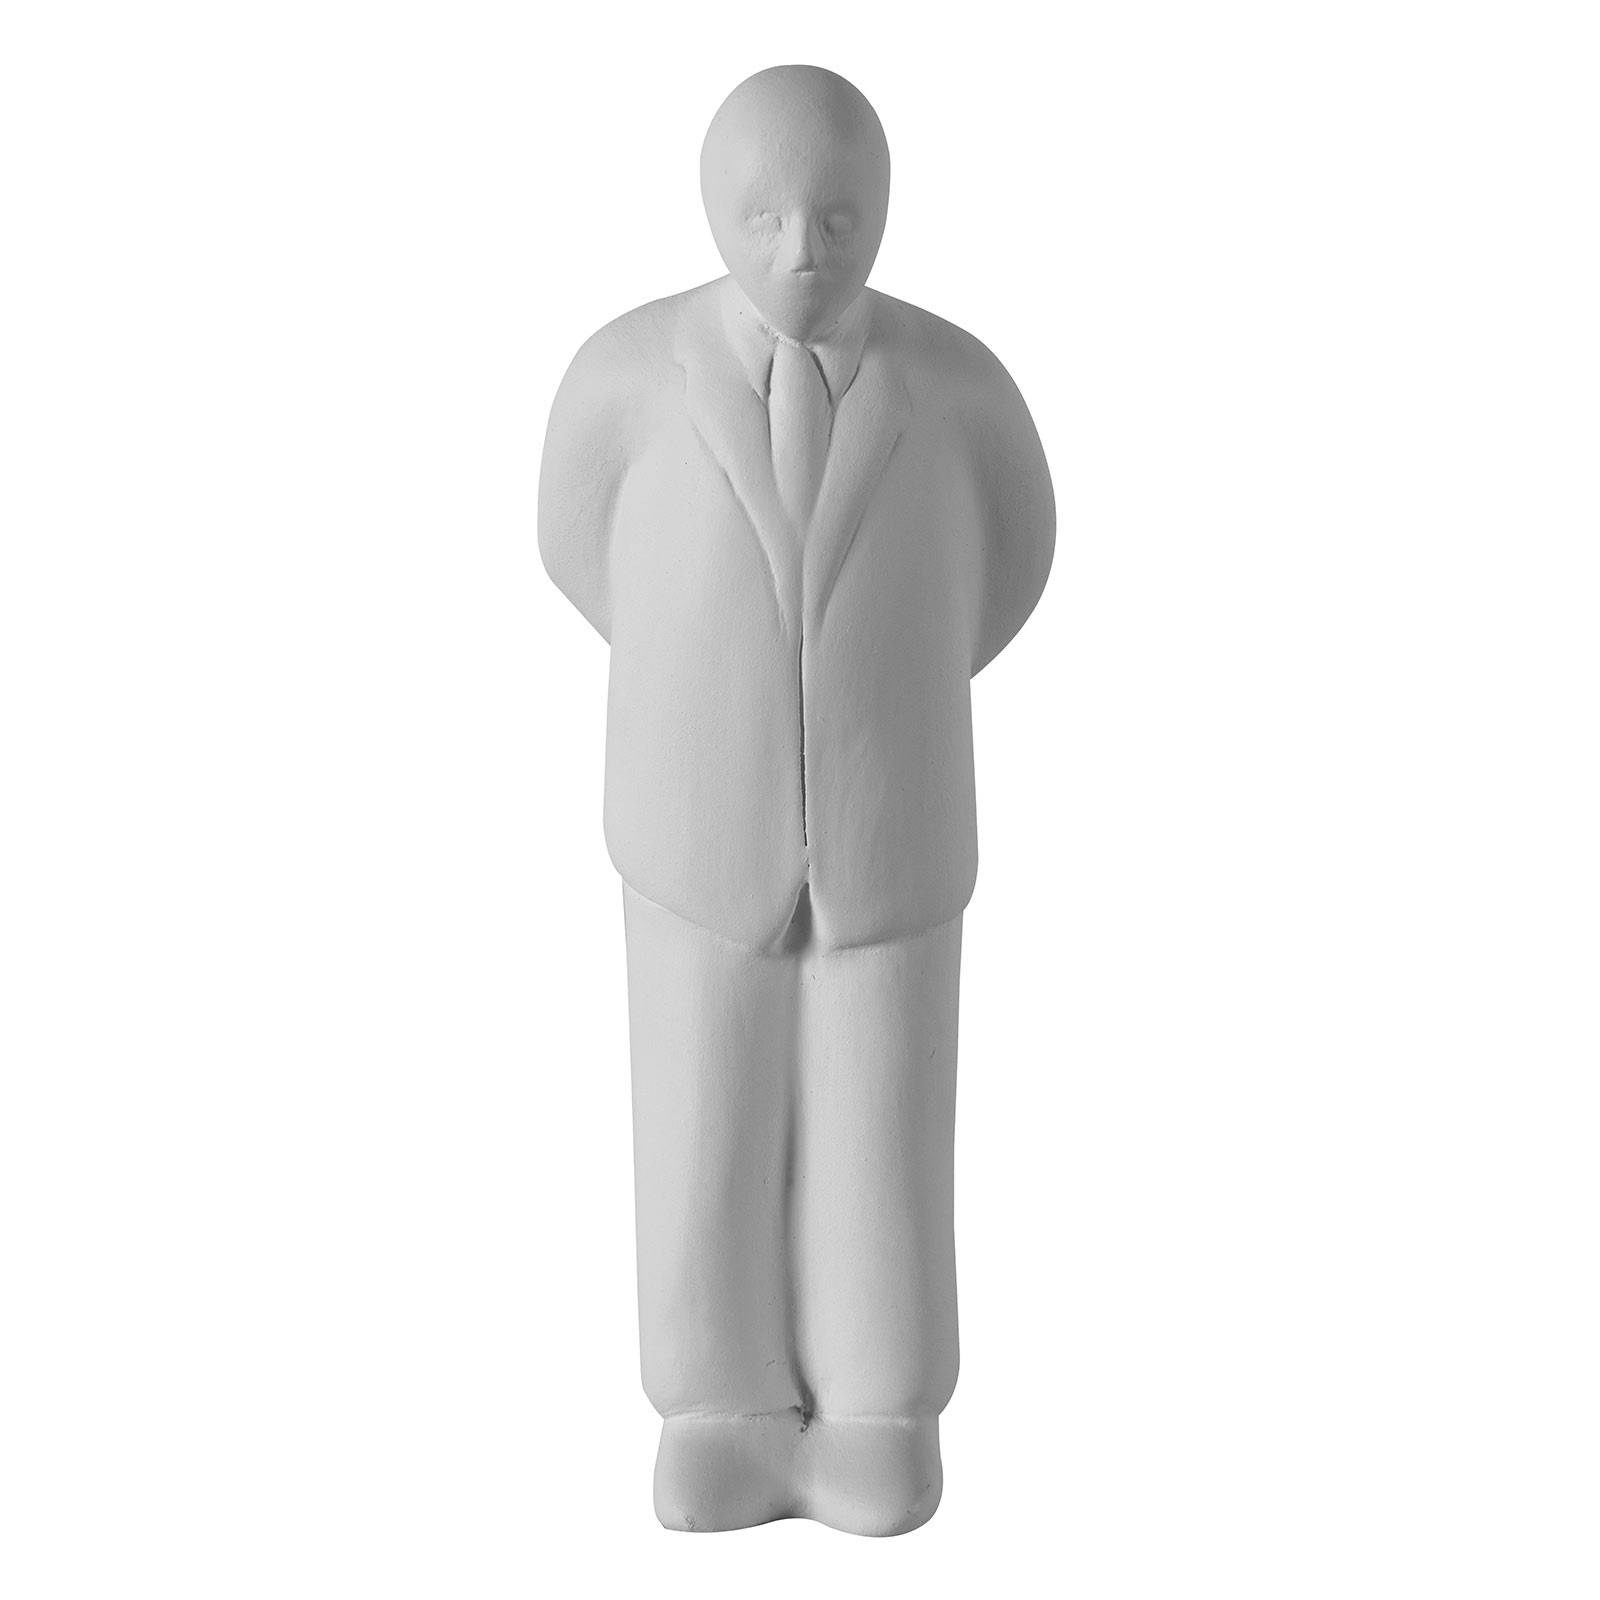 Karman Umarell dísz figura, 16 cm magas, álló